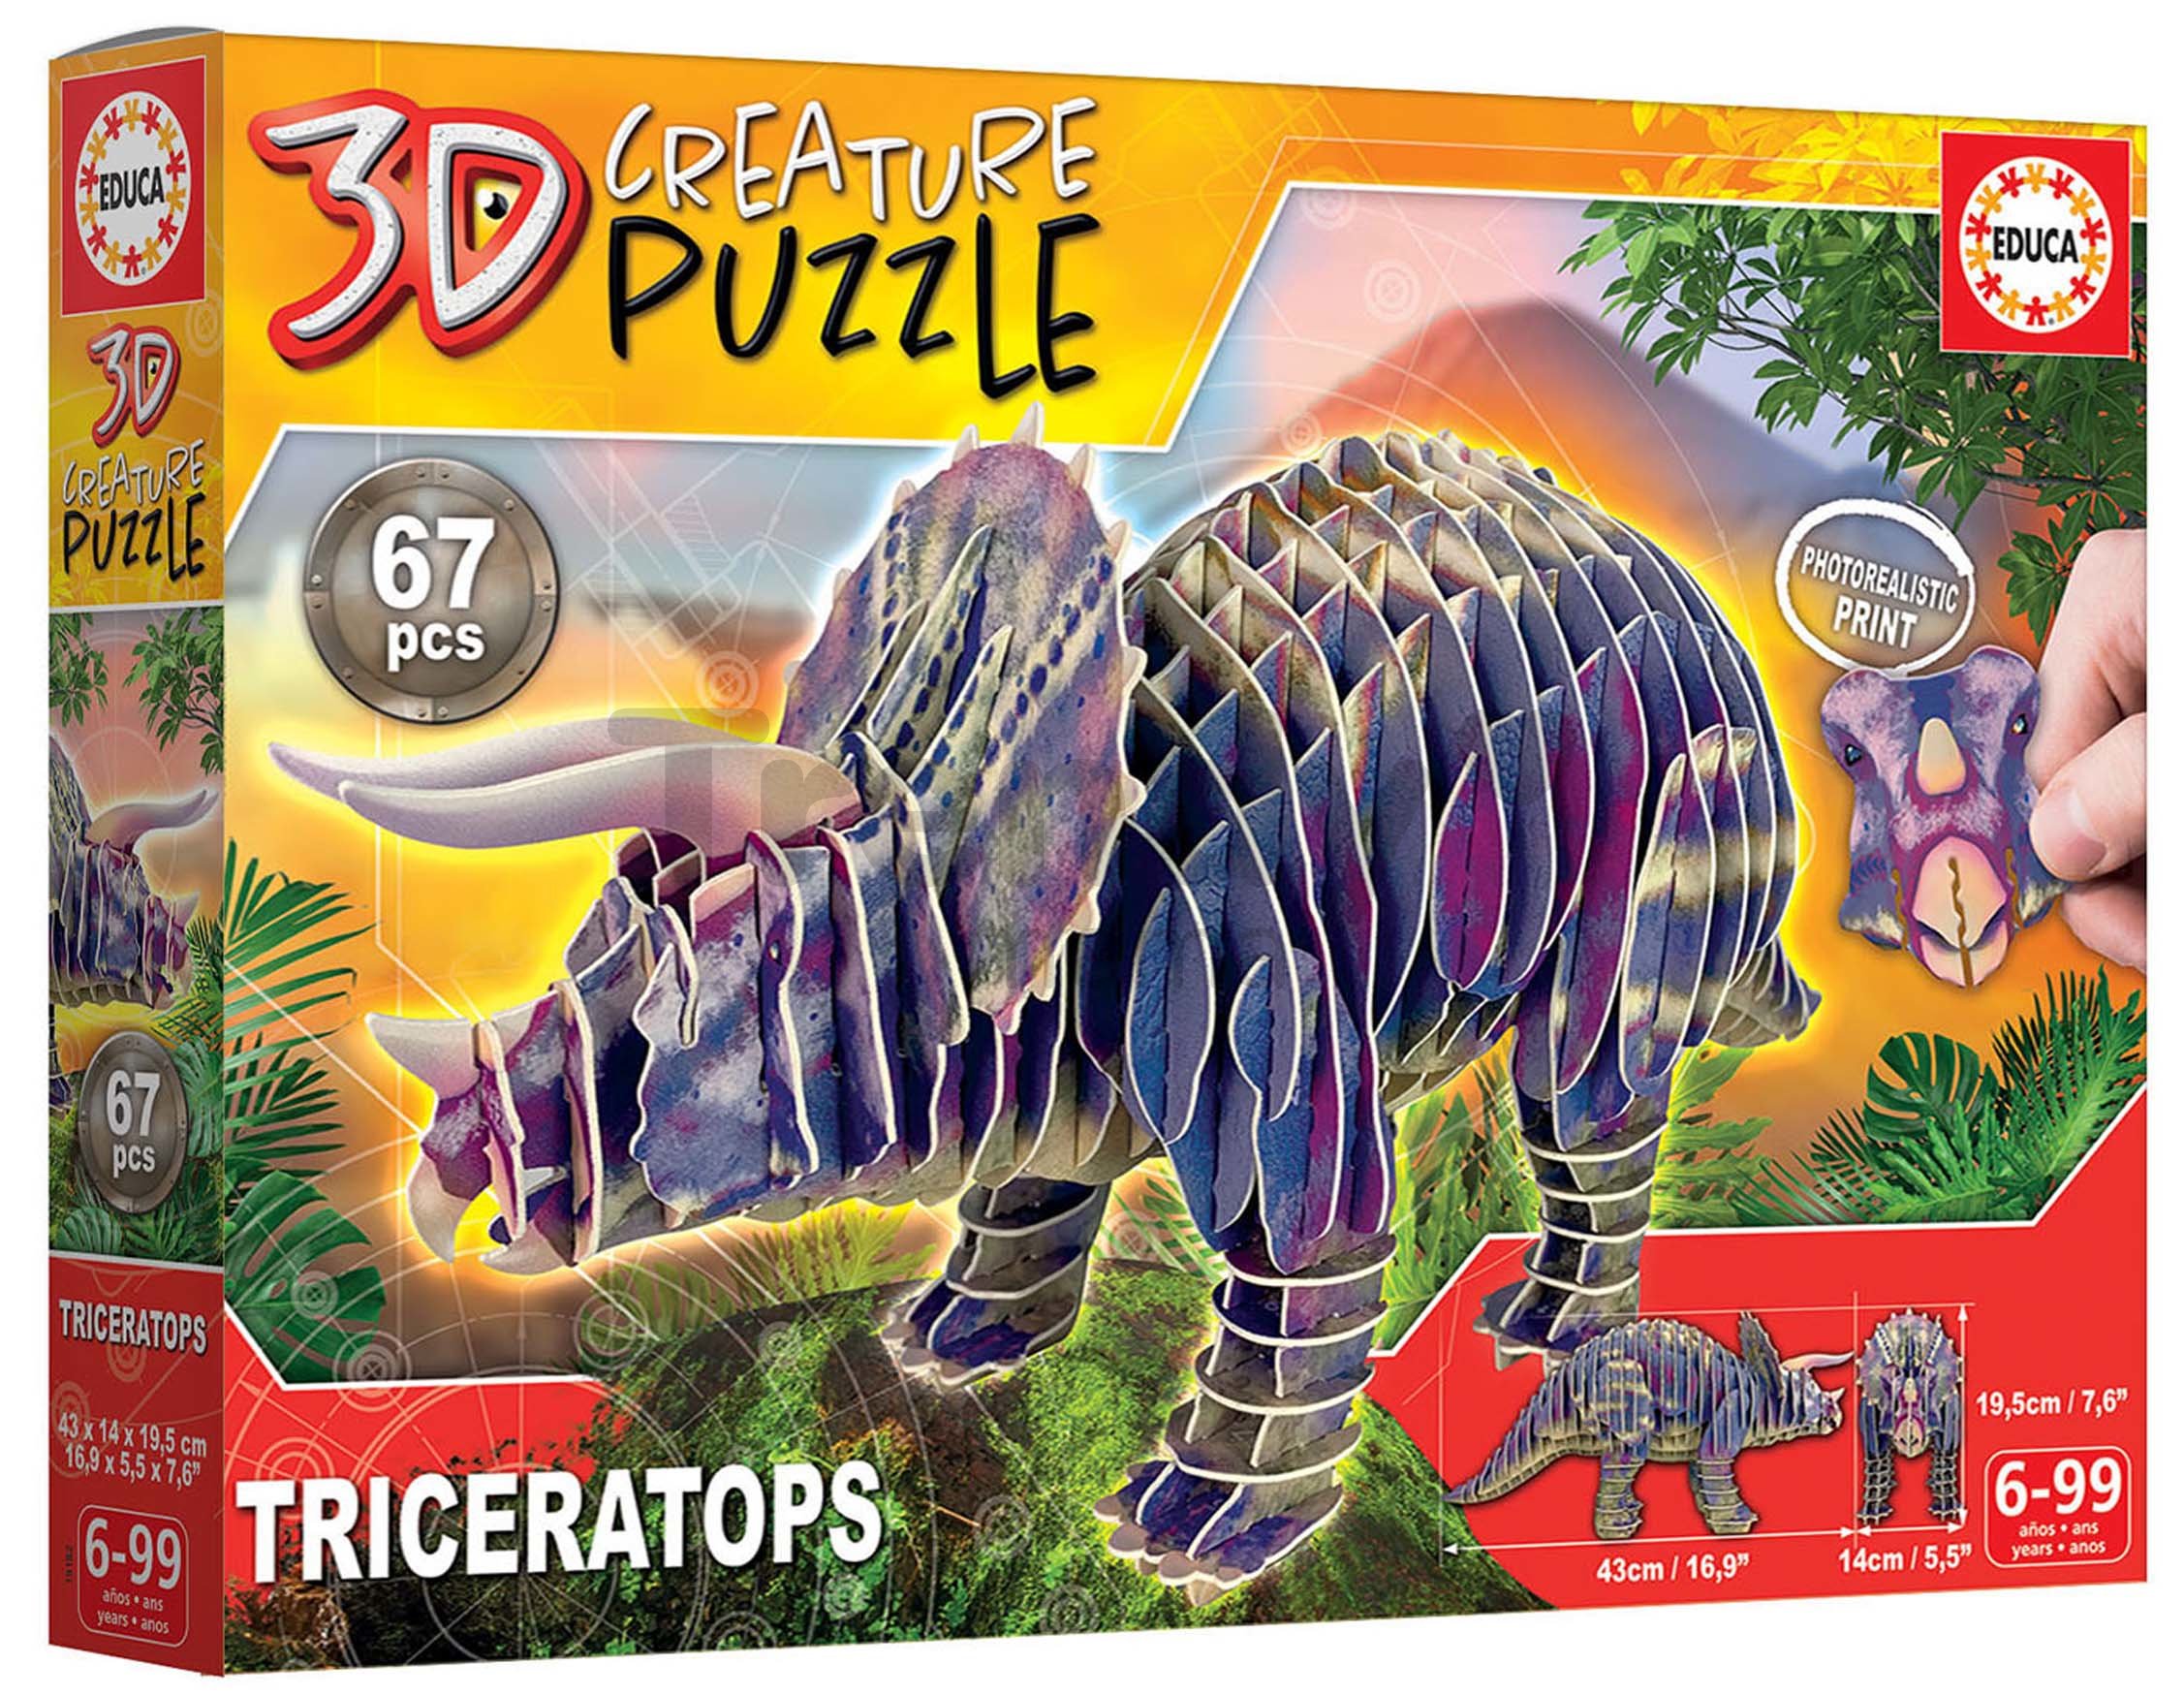 Velociraptor 3D Creature Puzzle - Educa Borras